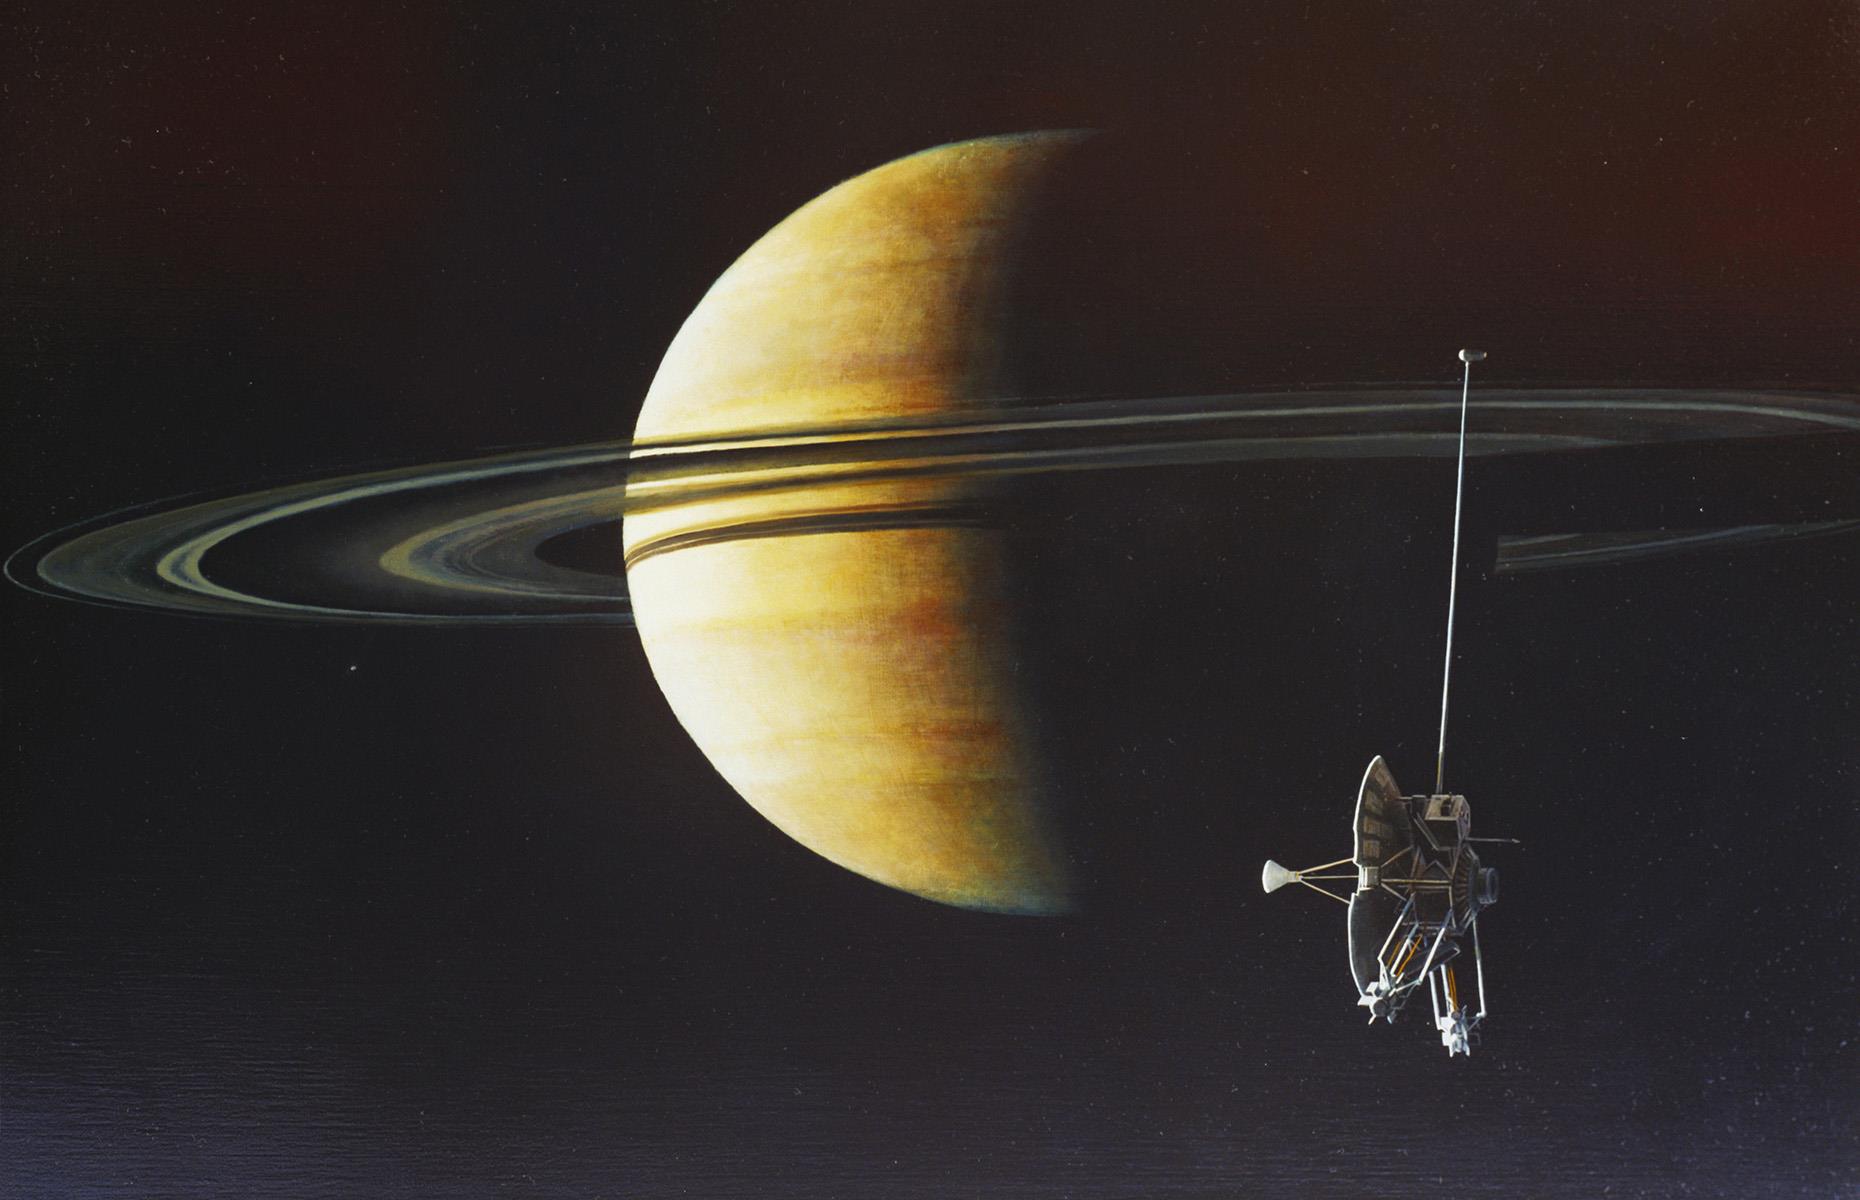 Pioneer 11: Scutum constellation